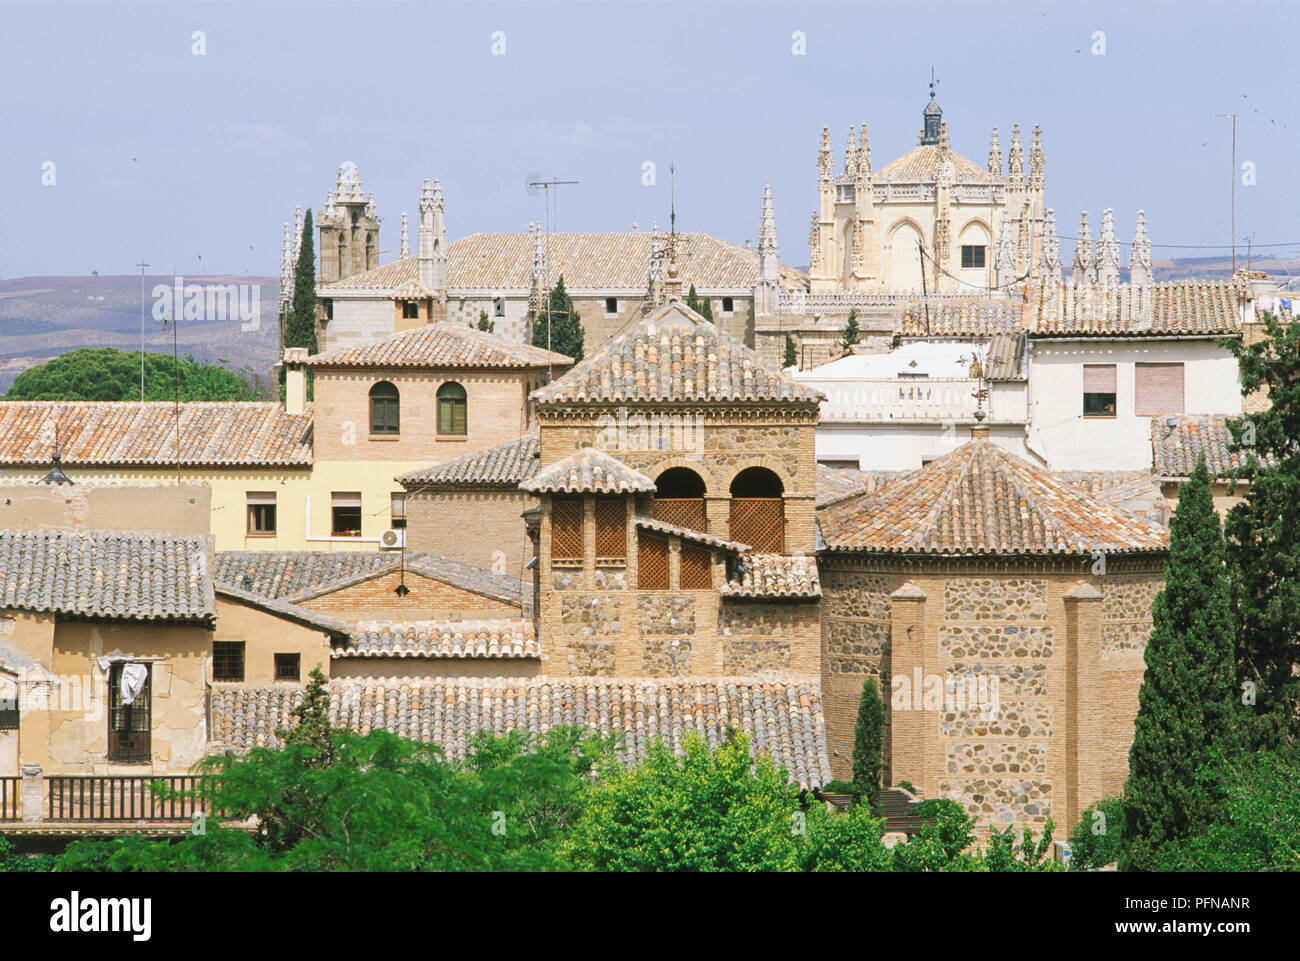 Spain, Toledo, exterior of Casa-Museo de El Greco. Stock Photo